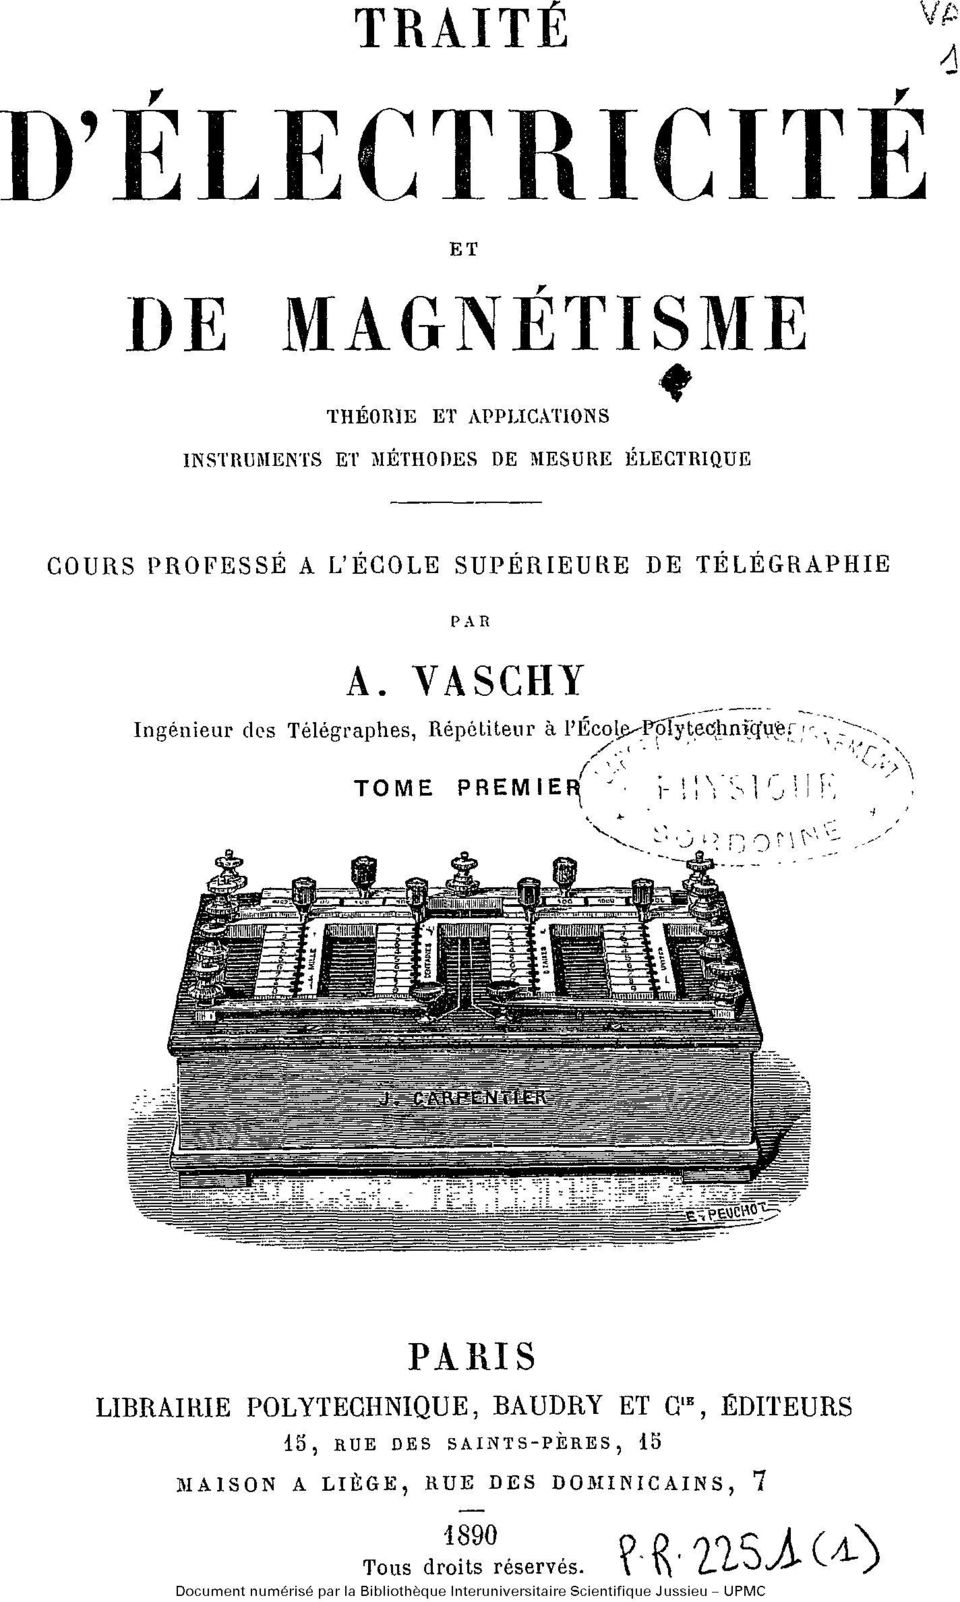 VASCHY Ingénieur des Télégraphes, Répétiteur à l'ecole École Polytecnique TOME PREMIER PARIS